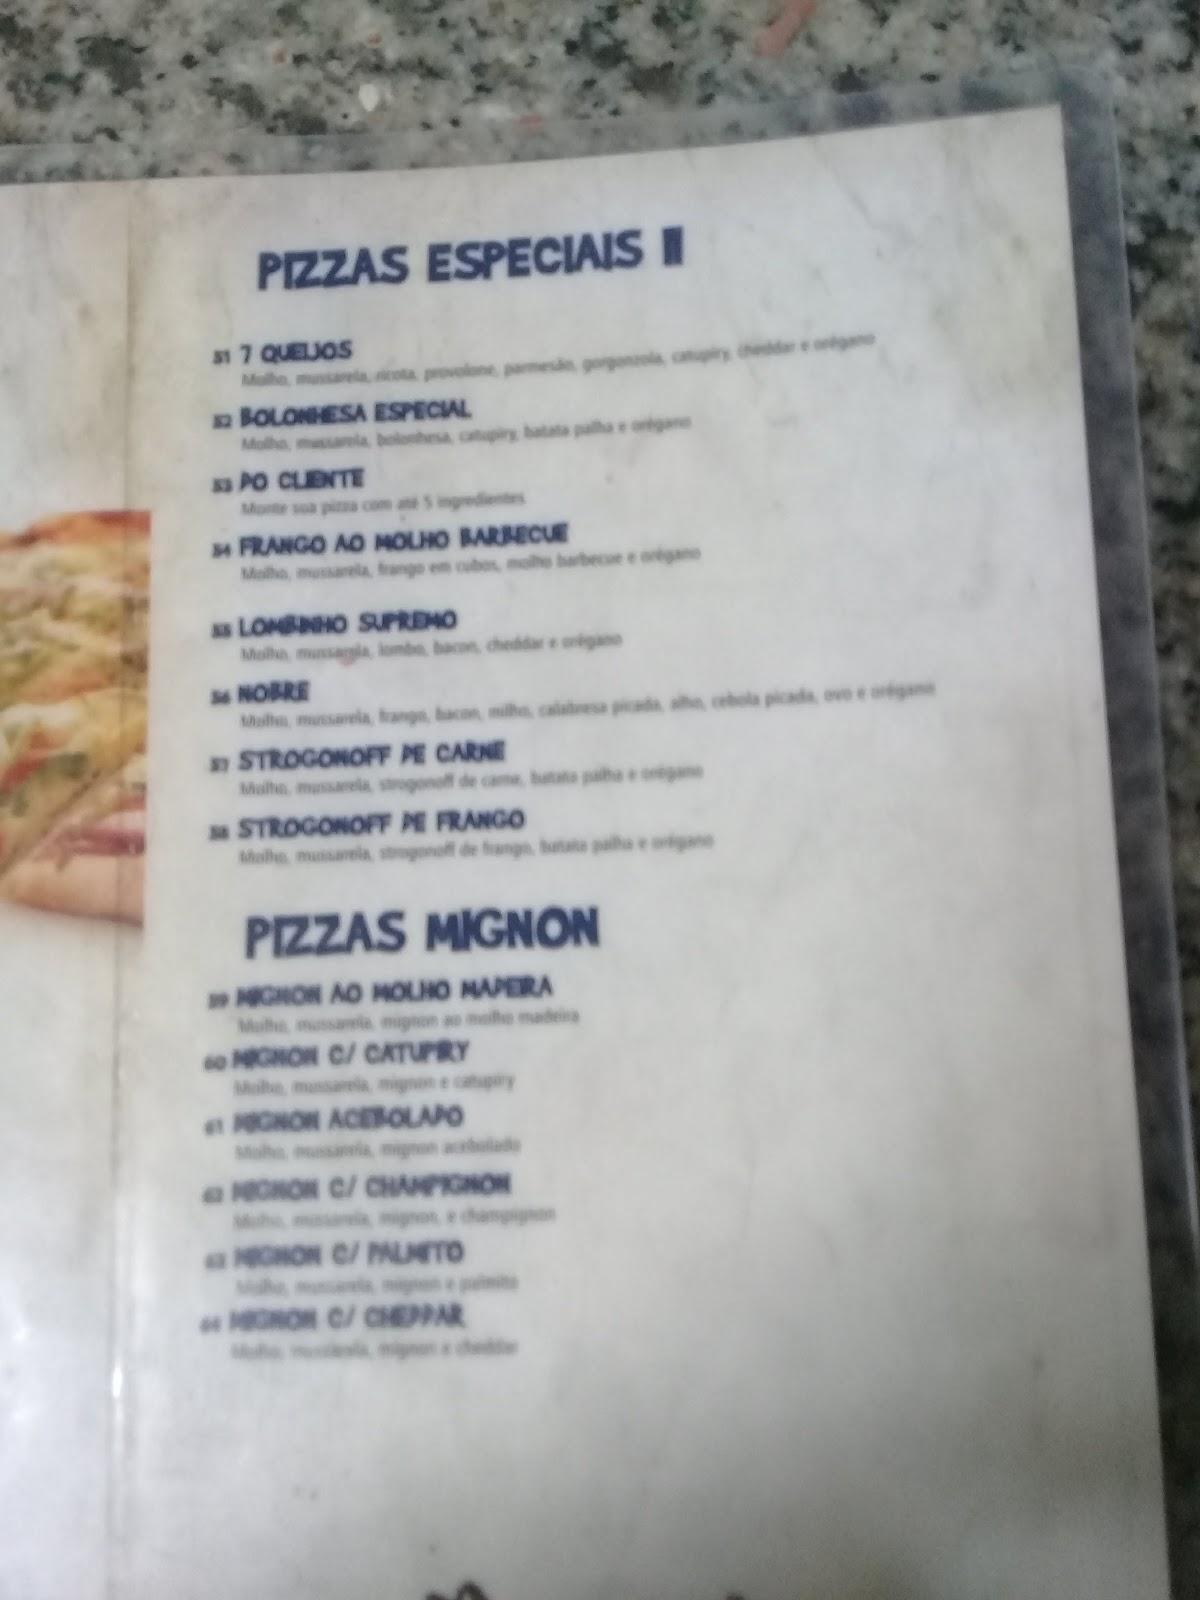 Tico e Teco Lanche E Pizzaria E Marmitaria, Araucária, R. Saracura -  Avaliações de restaurantes